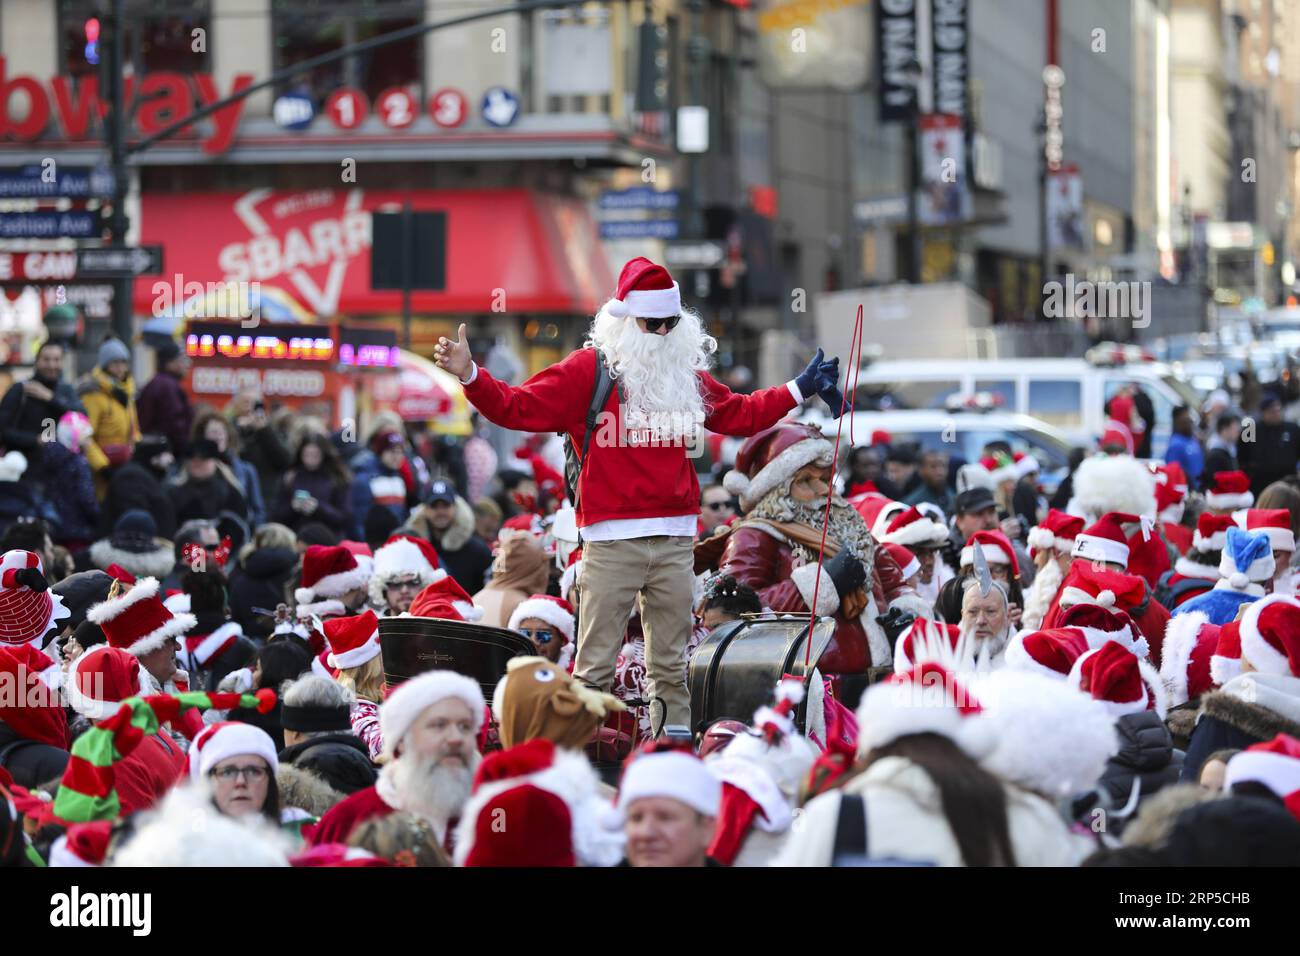 (181208) -- NEW YORK, 8 décembre 2018 -- les fêtards habillés en Père Noël participent à la SantaCon 2018 à New York, aux États-Unis, le 8 décembre 2018. Habillés en Père Noël ou en costumes festifs, des centaines de personnes ont participé à la SantaCon 2018 samedi, profitant de l'atmosphère de Noël et amassant des fonds pour la charité. US-NEW YORK-2018 SANTACON WangxYing PUBLICATIONxNOTxINxCHN Banque D'Images